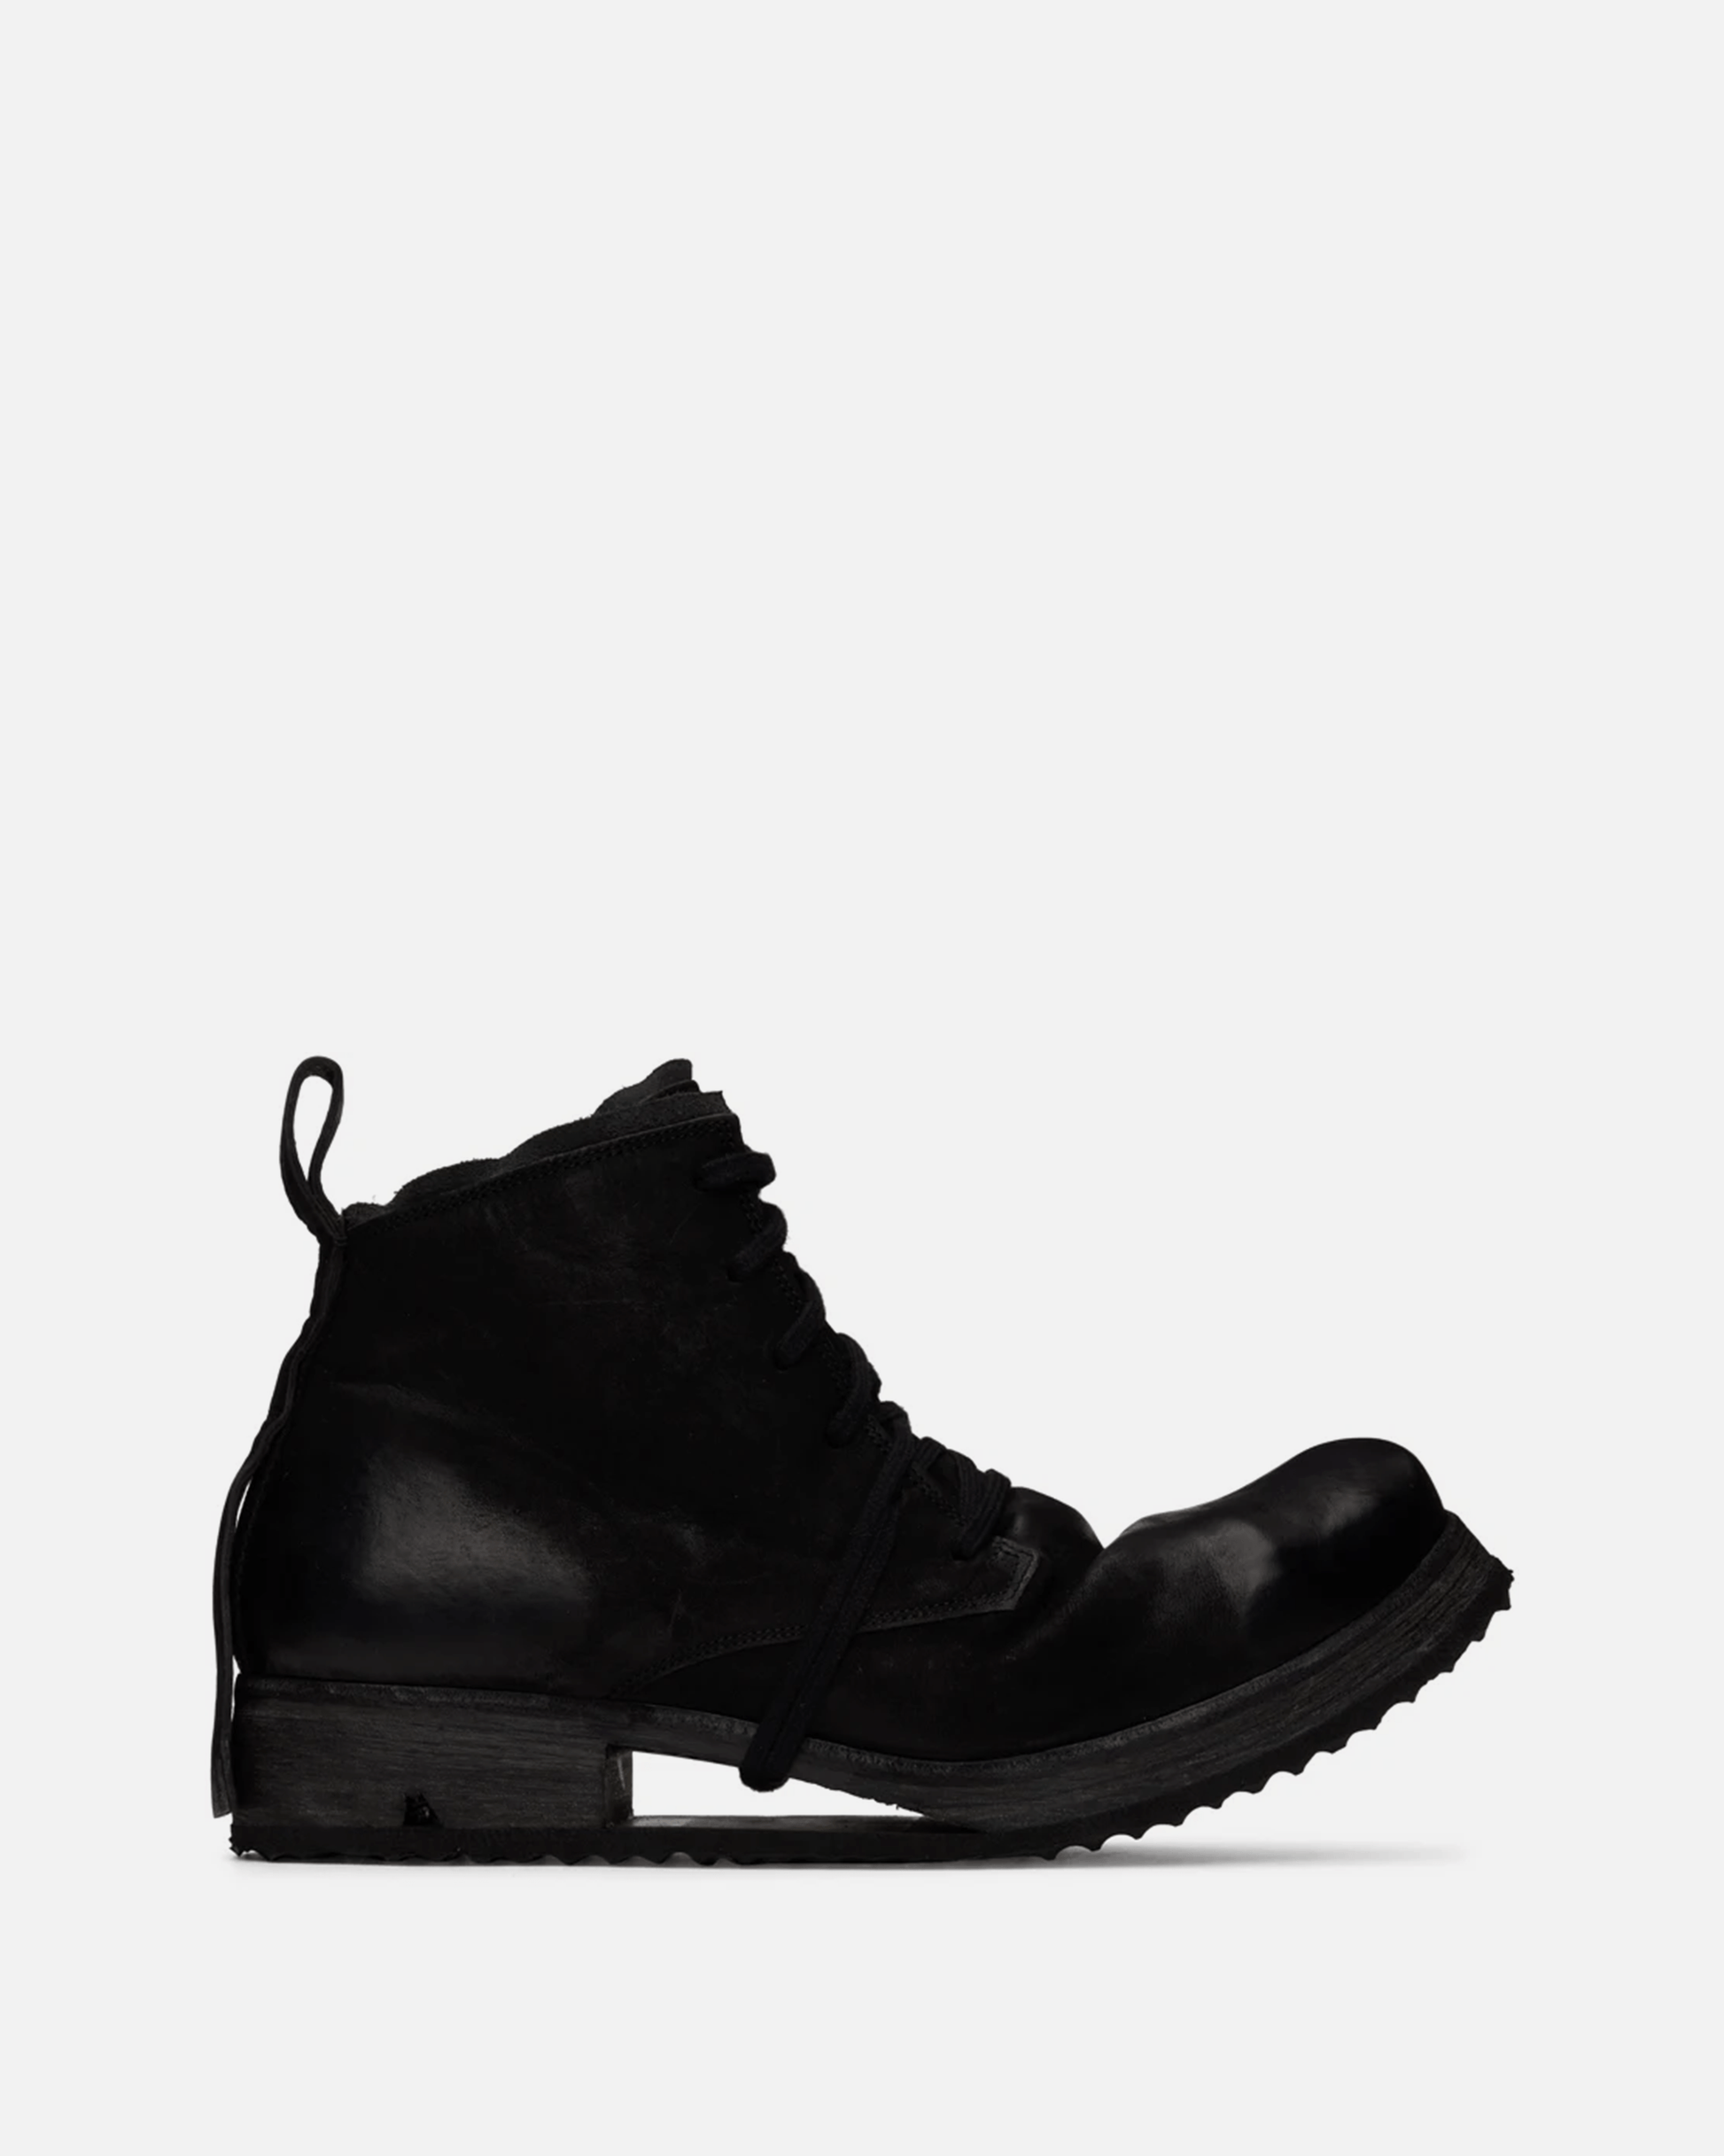 Boris Bidjan Saberi Men's Boots Boot4 Leather Boot in Black